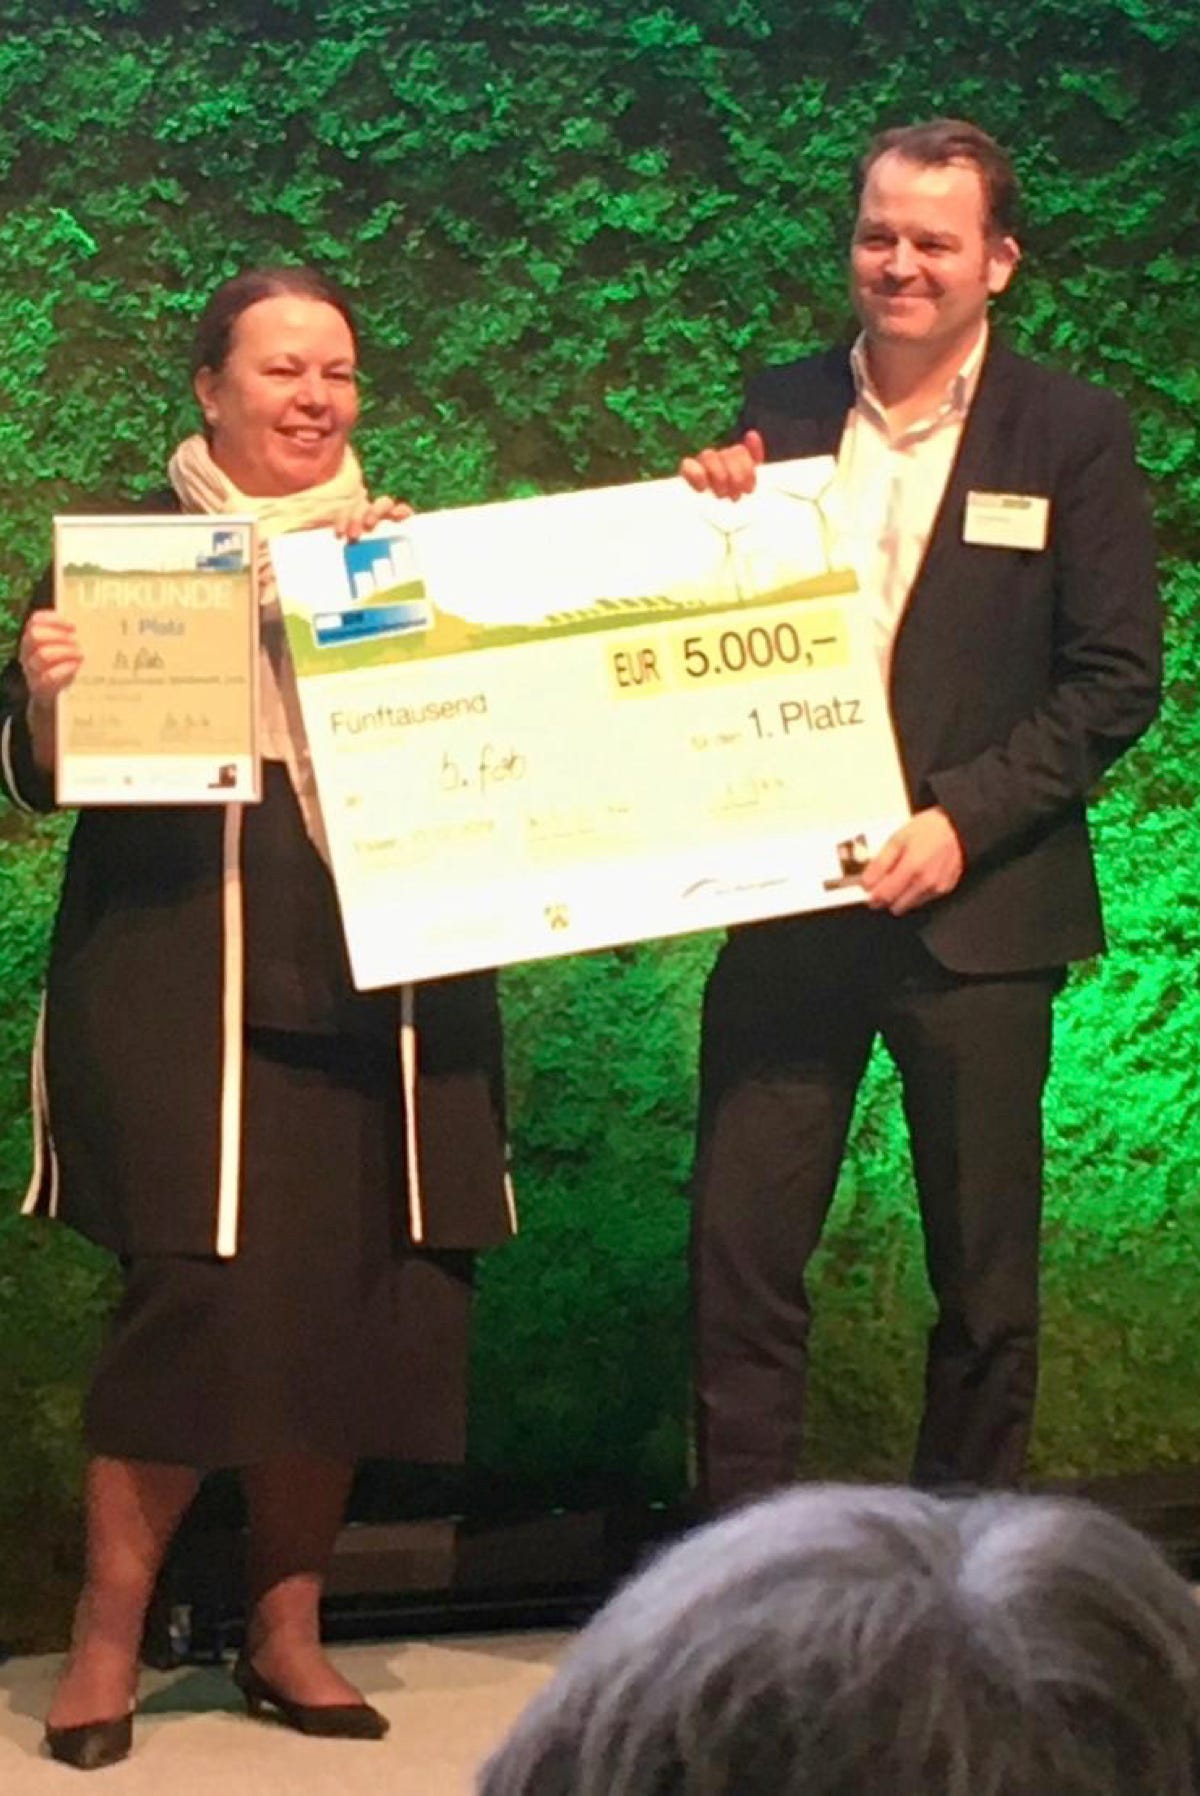 NRW-Umweltministerin Ursula Heinen-Esser überreich dem Sieger des KUER.NRW Businessplanwettbewerbs symbolisch einen Scheck mit dem Preisgeld in Höhe von 5.000,- €